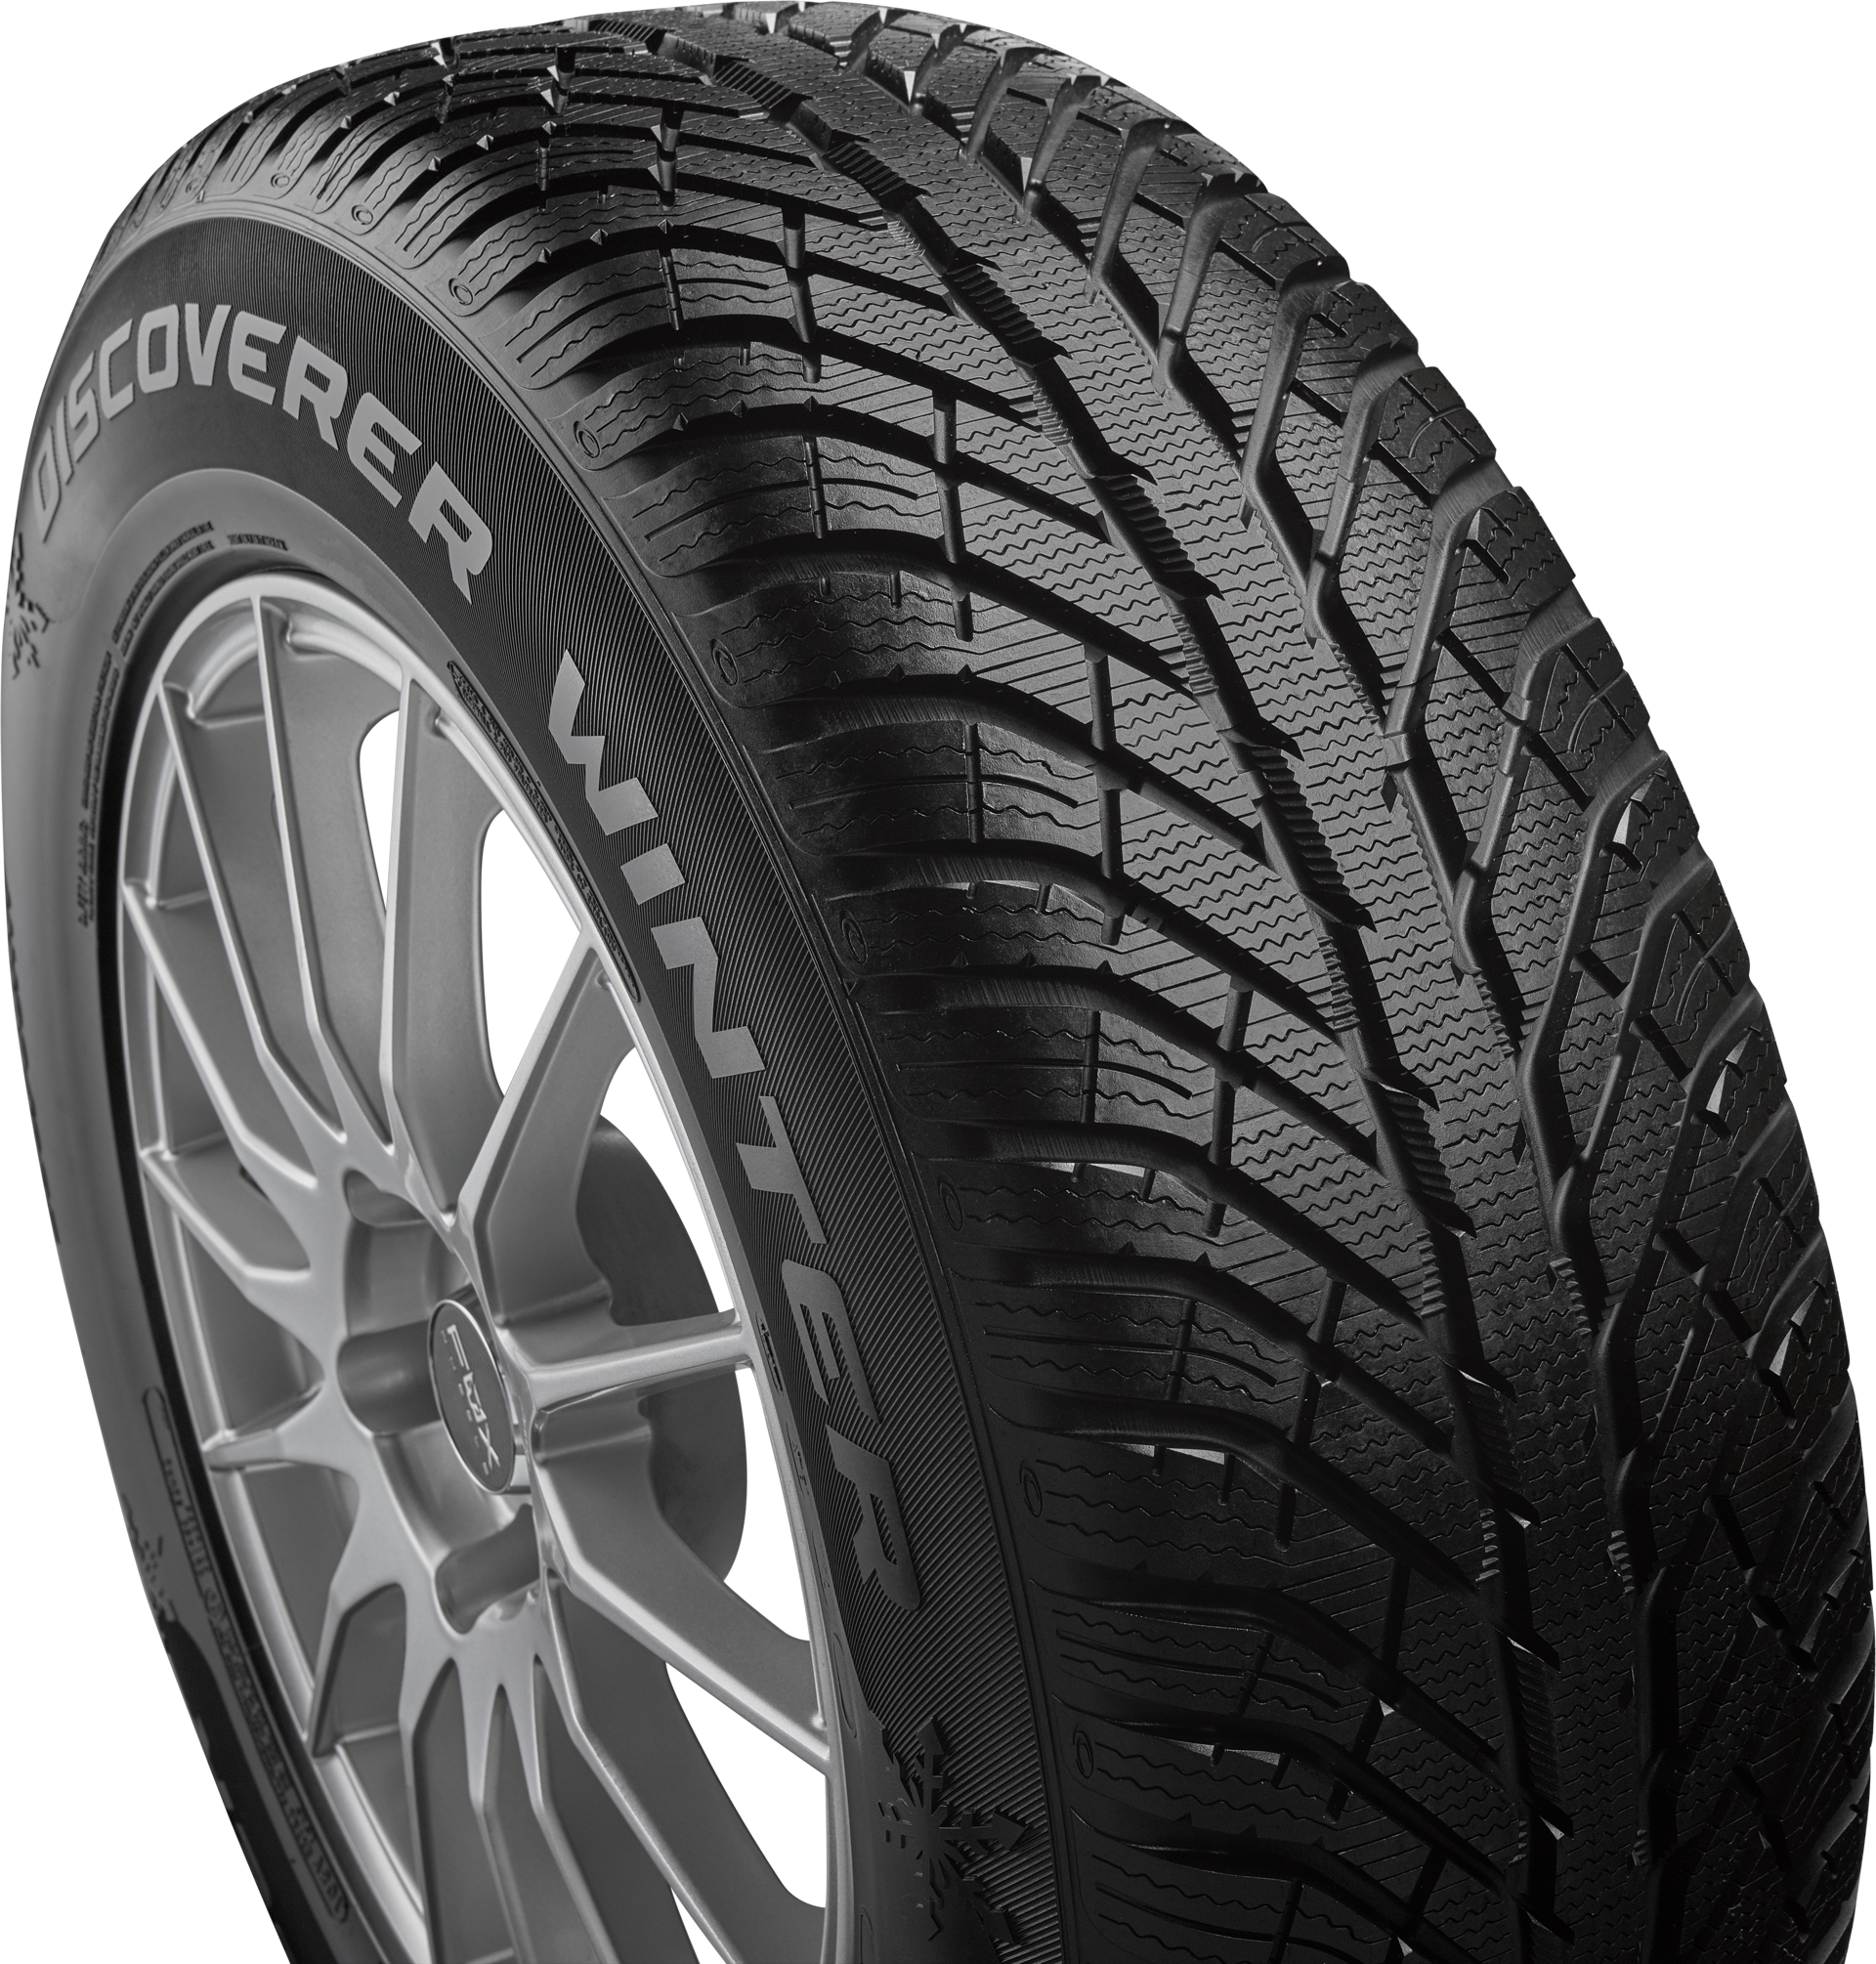 Discoverer Winter - Cooper Tires™ Website Official